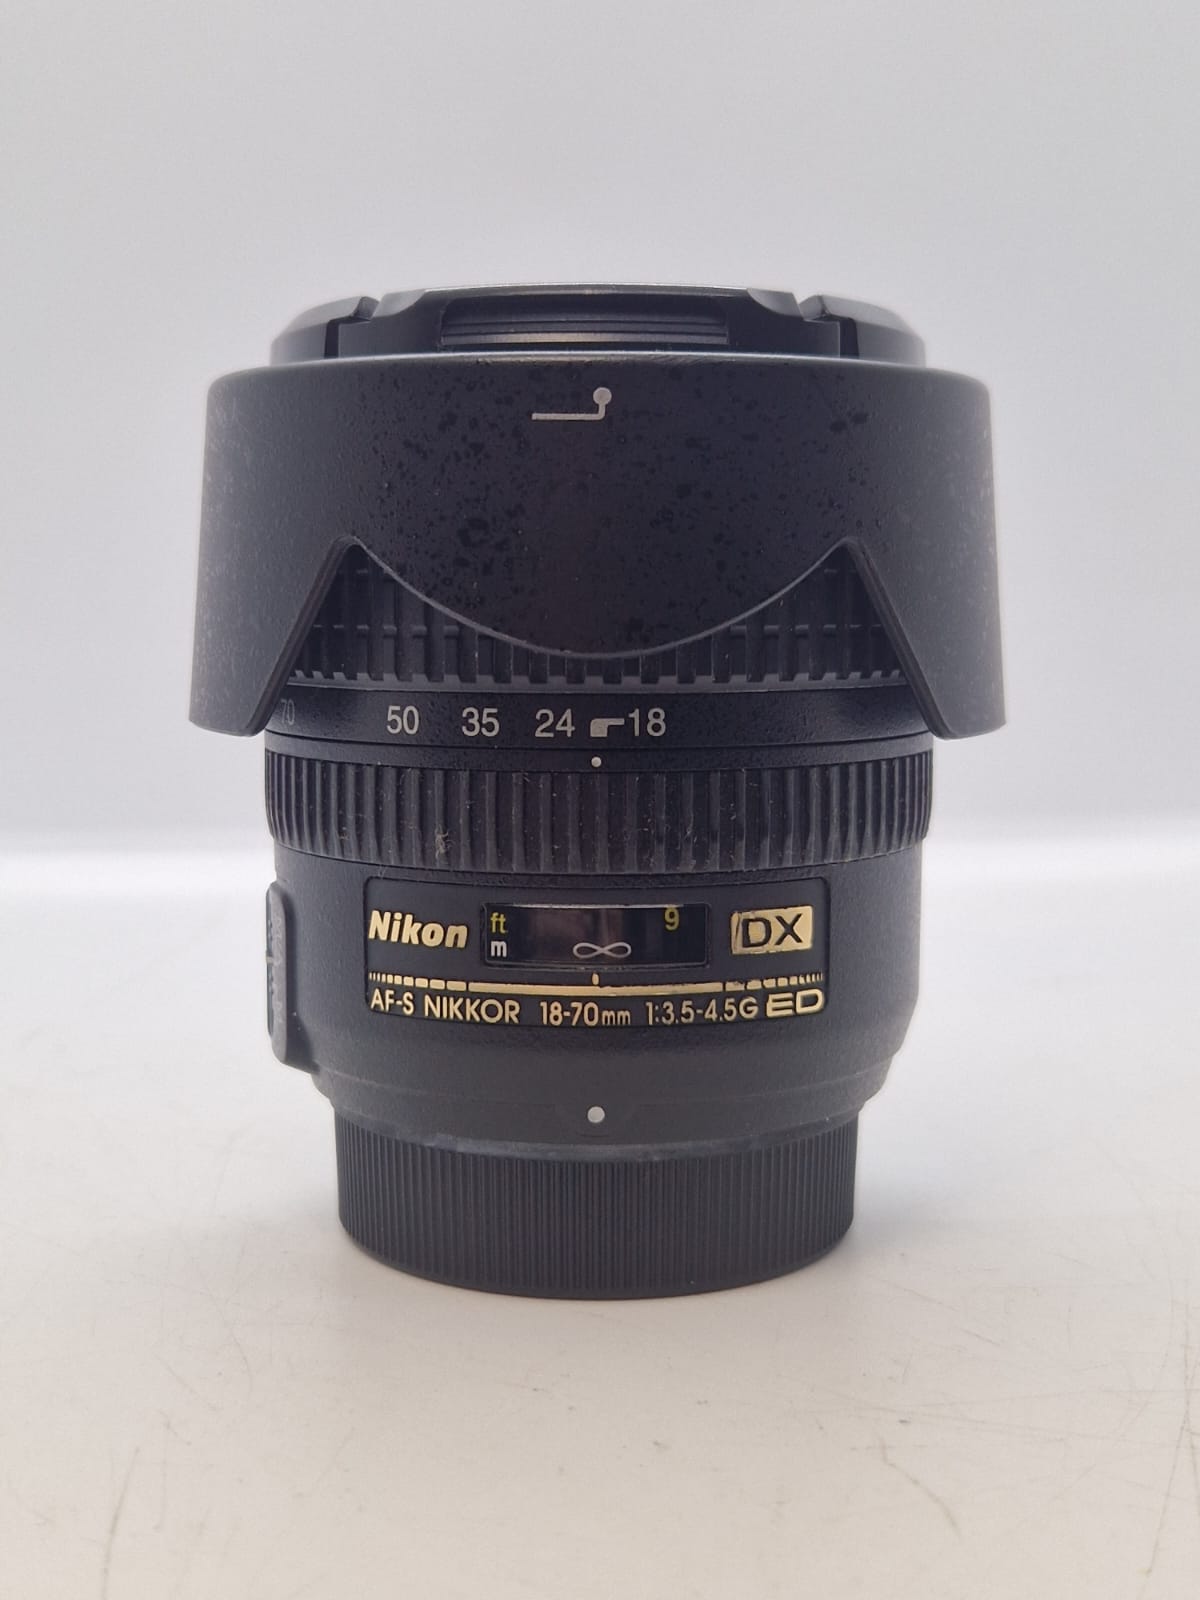 Nikon DX Zoom Nikkor 18-70mm F/3.5-4.5 AF-S ED Lens